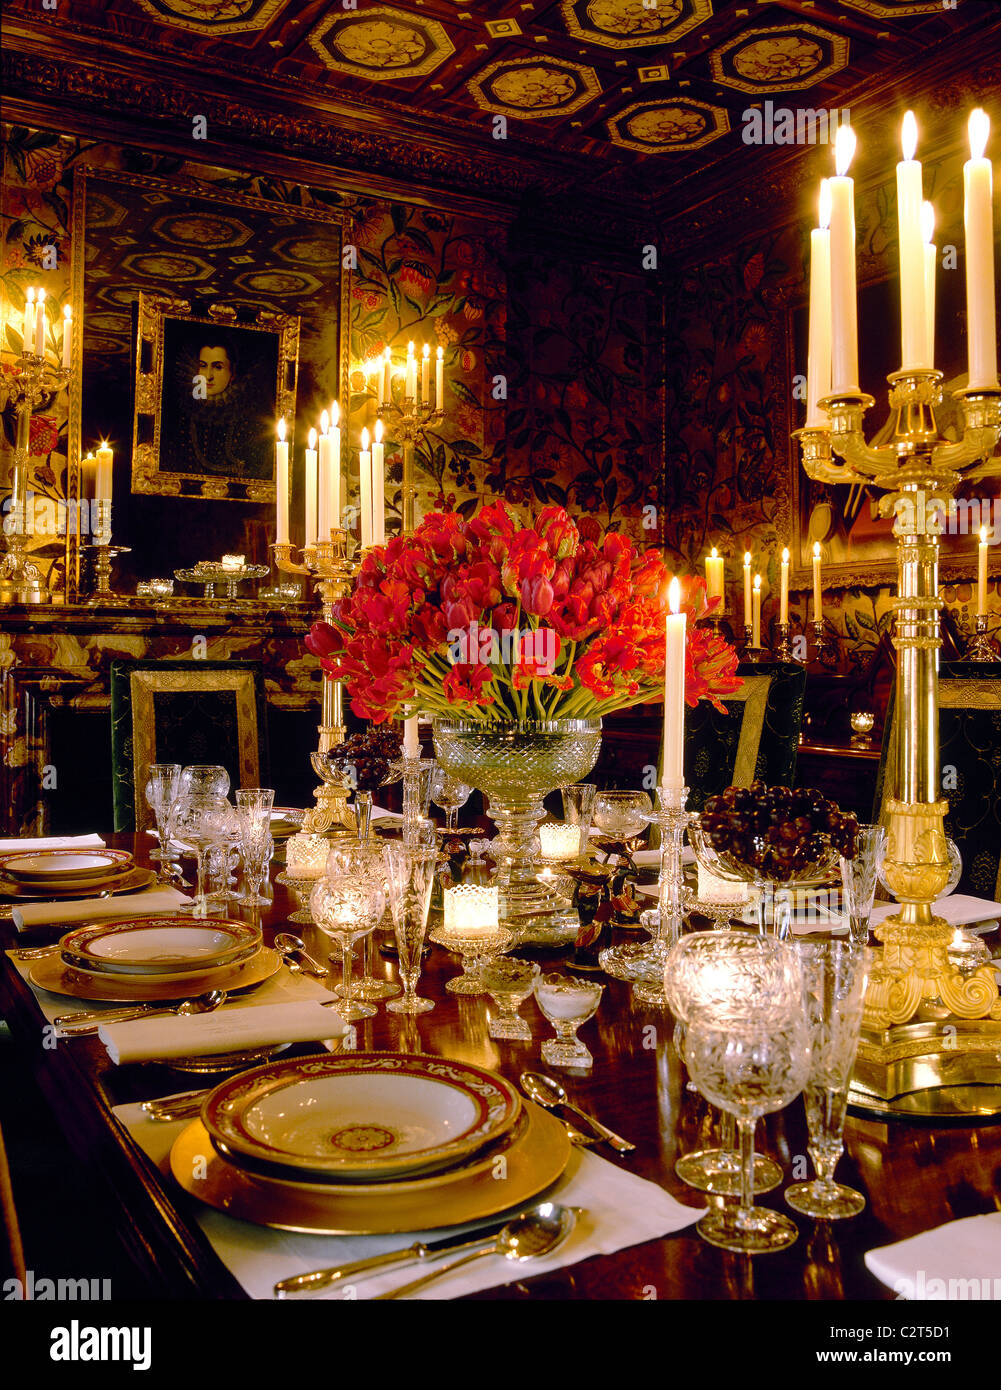 Salle à manger traditionnelle, service de table, table, chandeliers en argent Banque D'Images